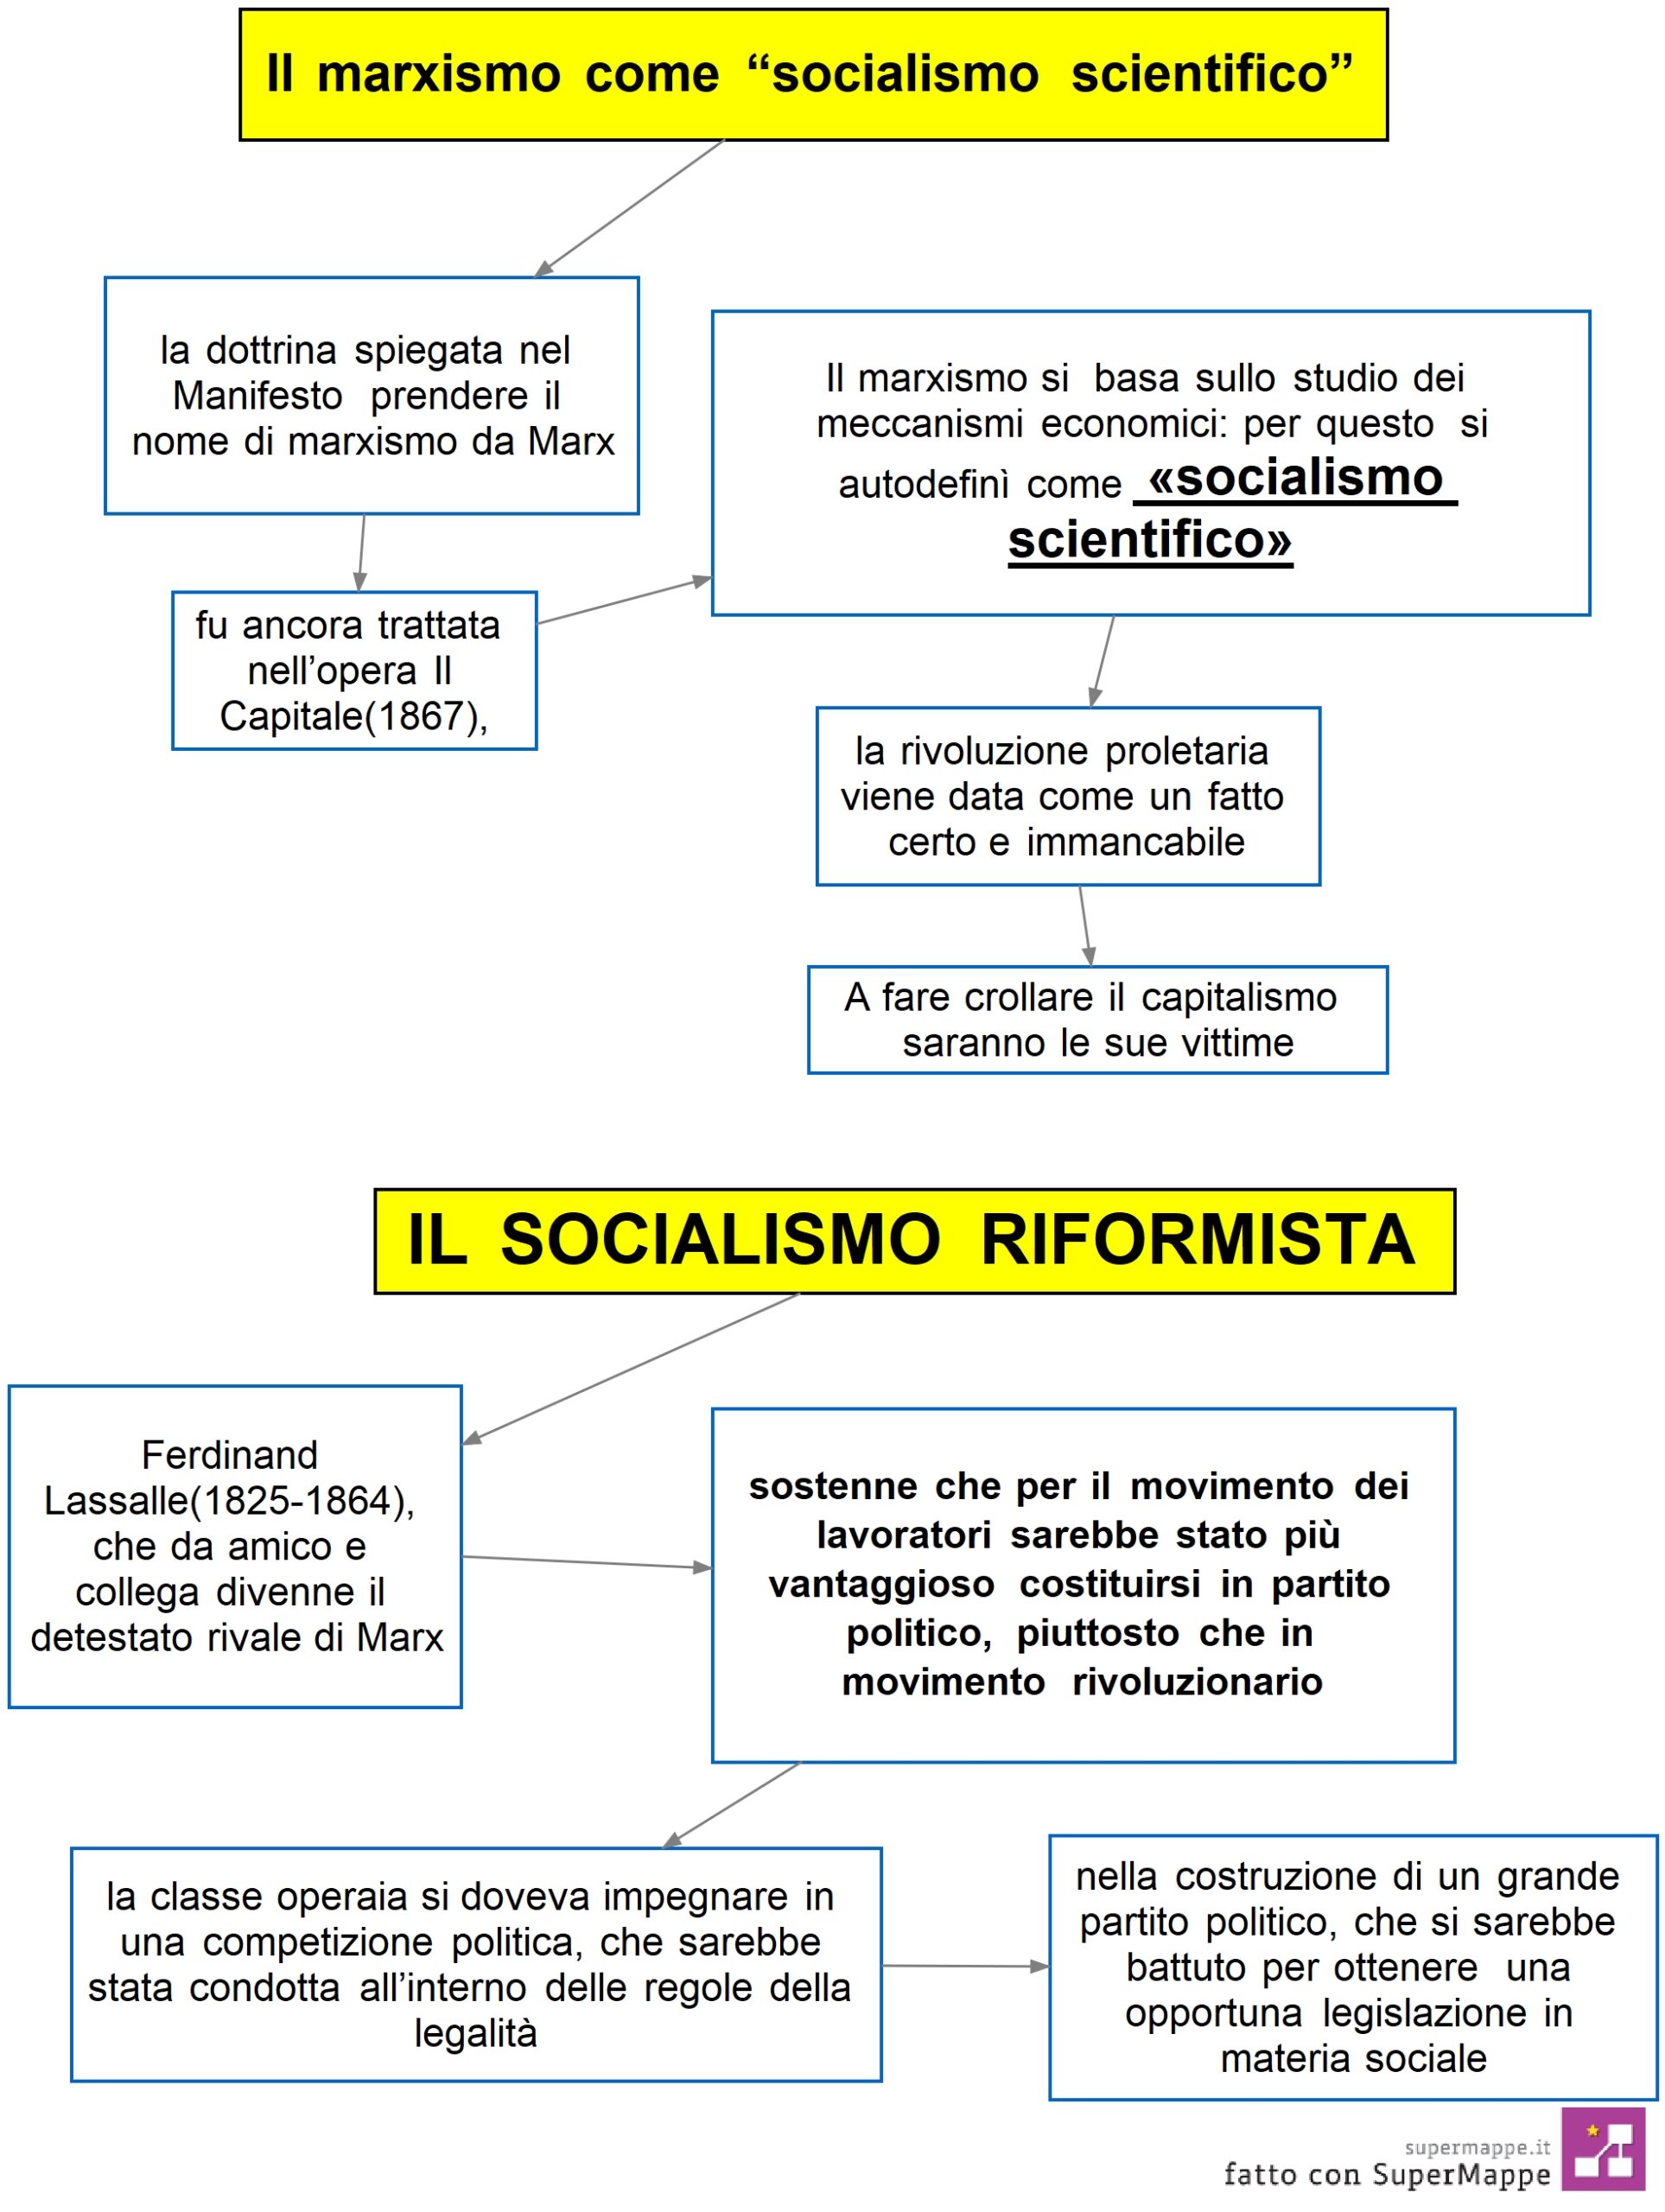 mappa concettuale il marxismo come “socialismo scientifico”